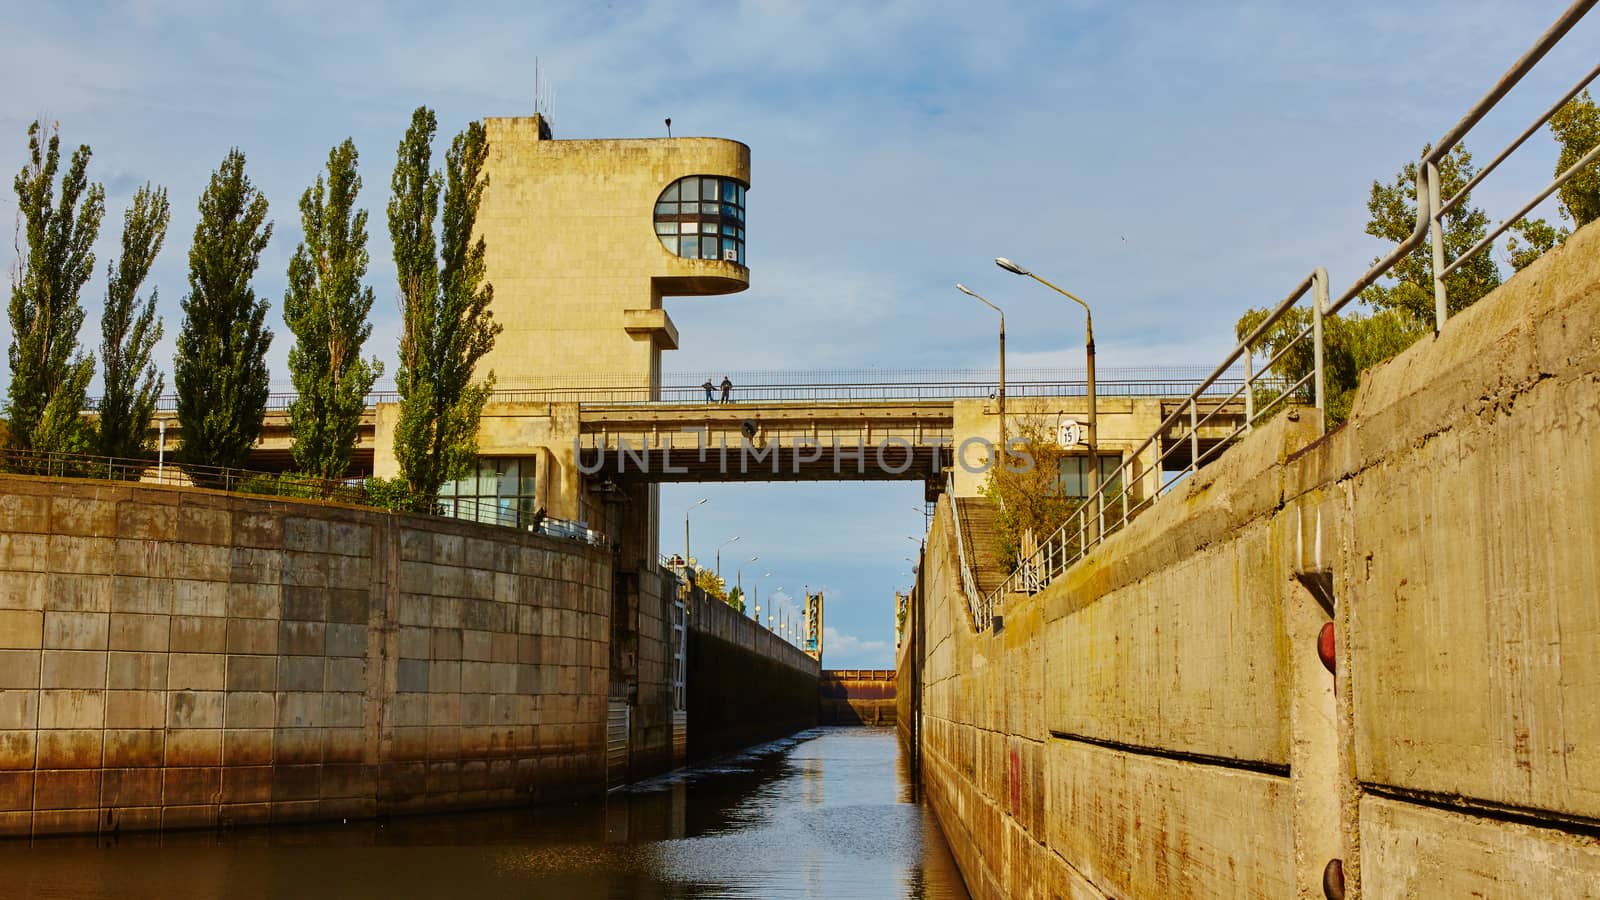 One of the locks on navigable river  by sarymsakov